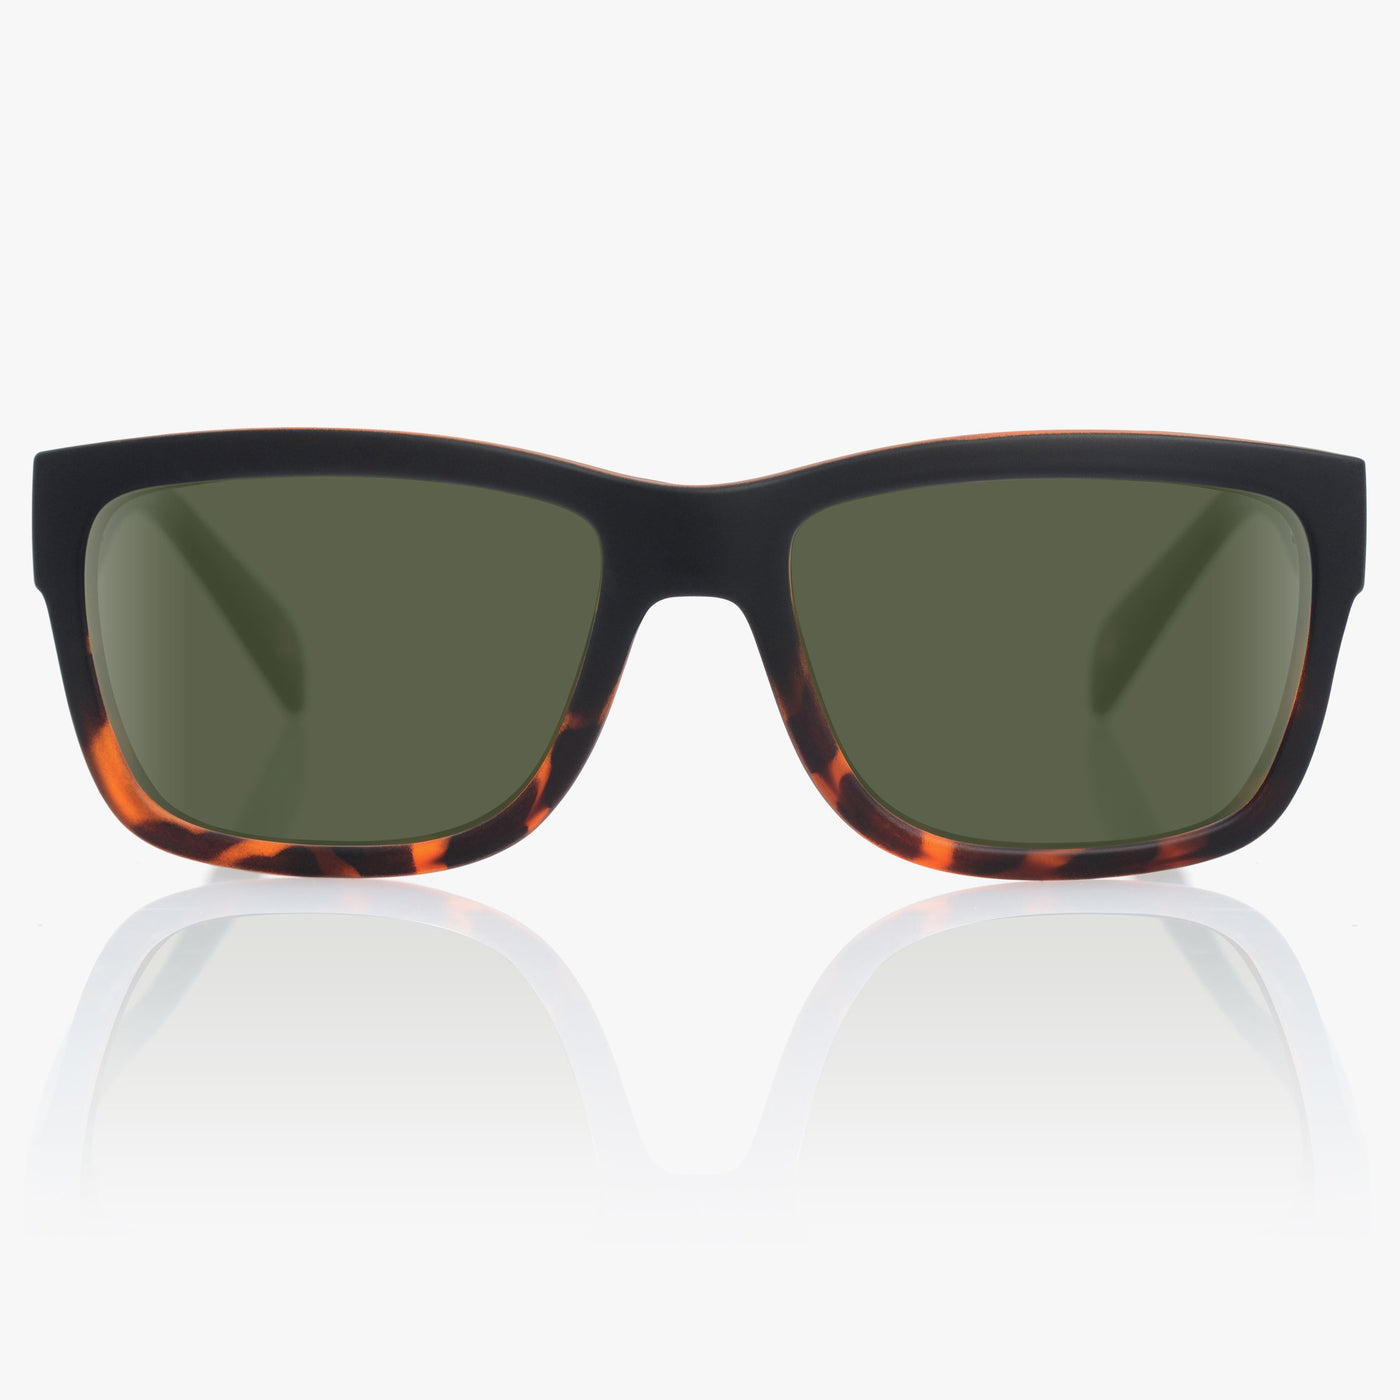 retro tortoiseshell sunglasses